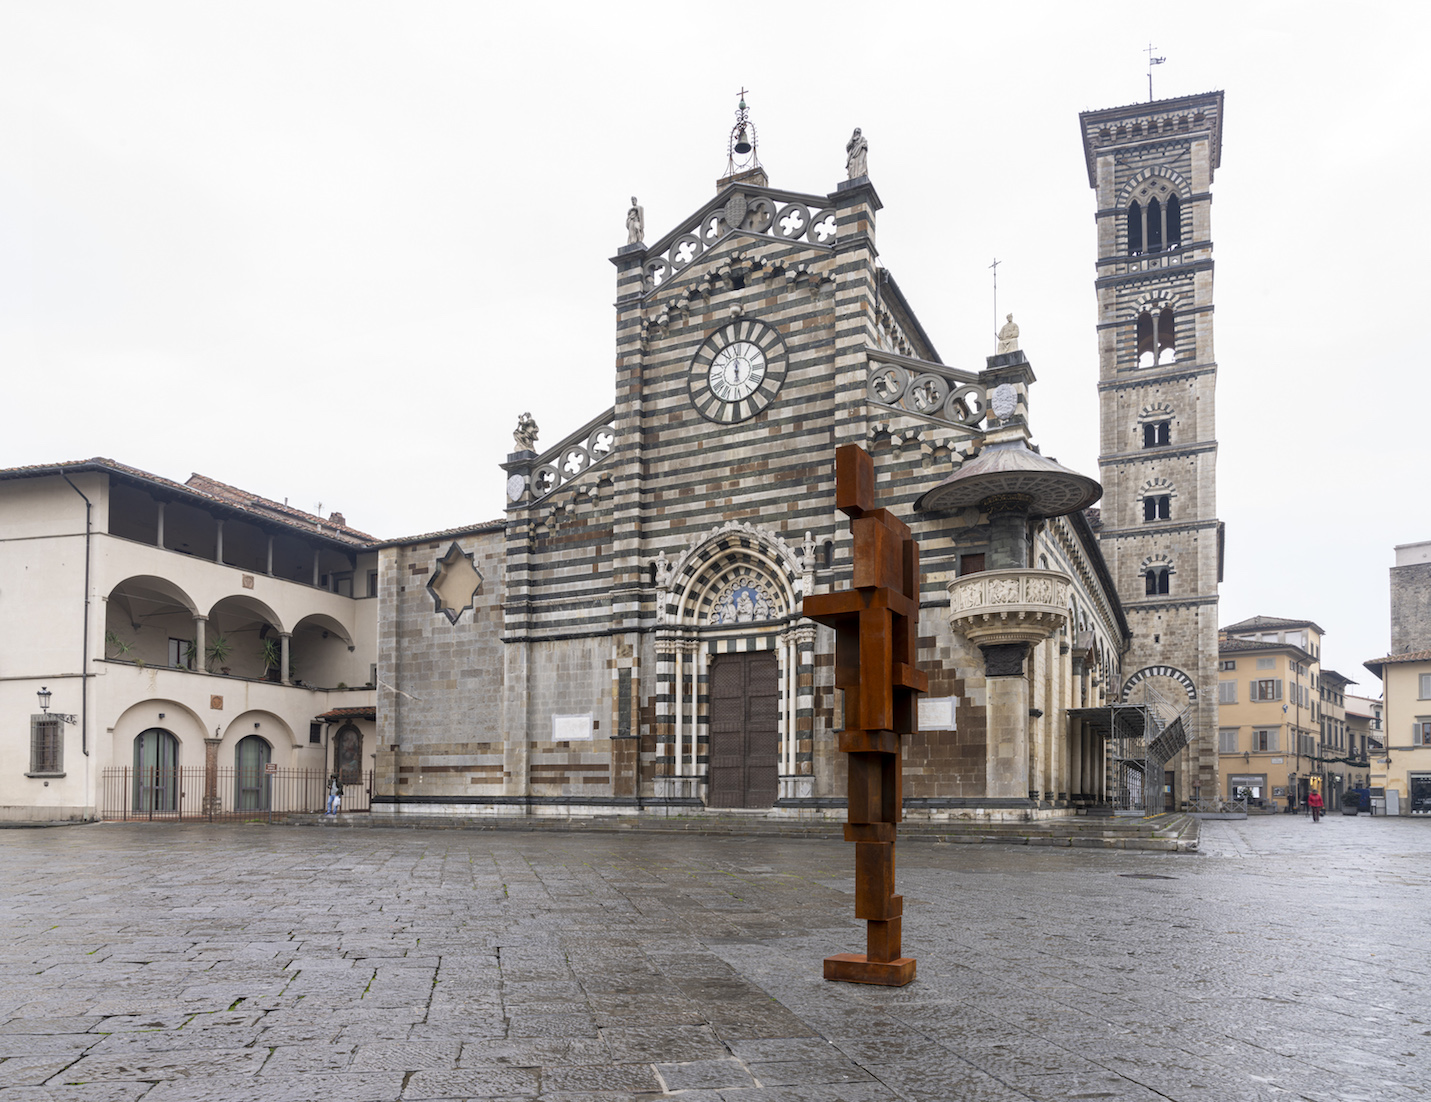 Scultura contemporanea in piazza antica: Gormley e Penone a Prato e Firenze